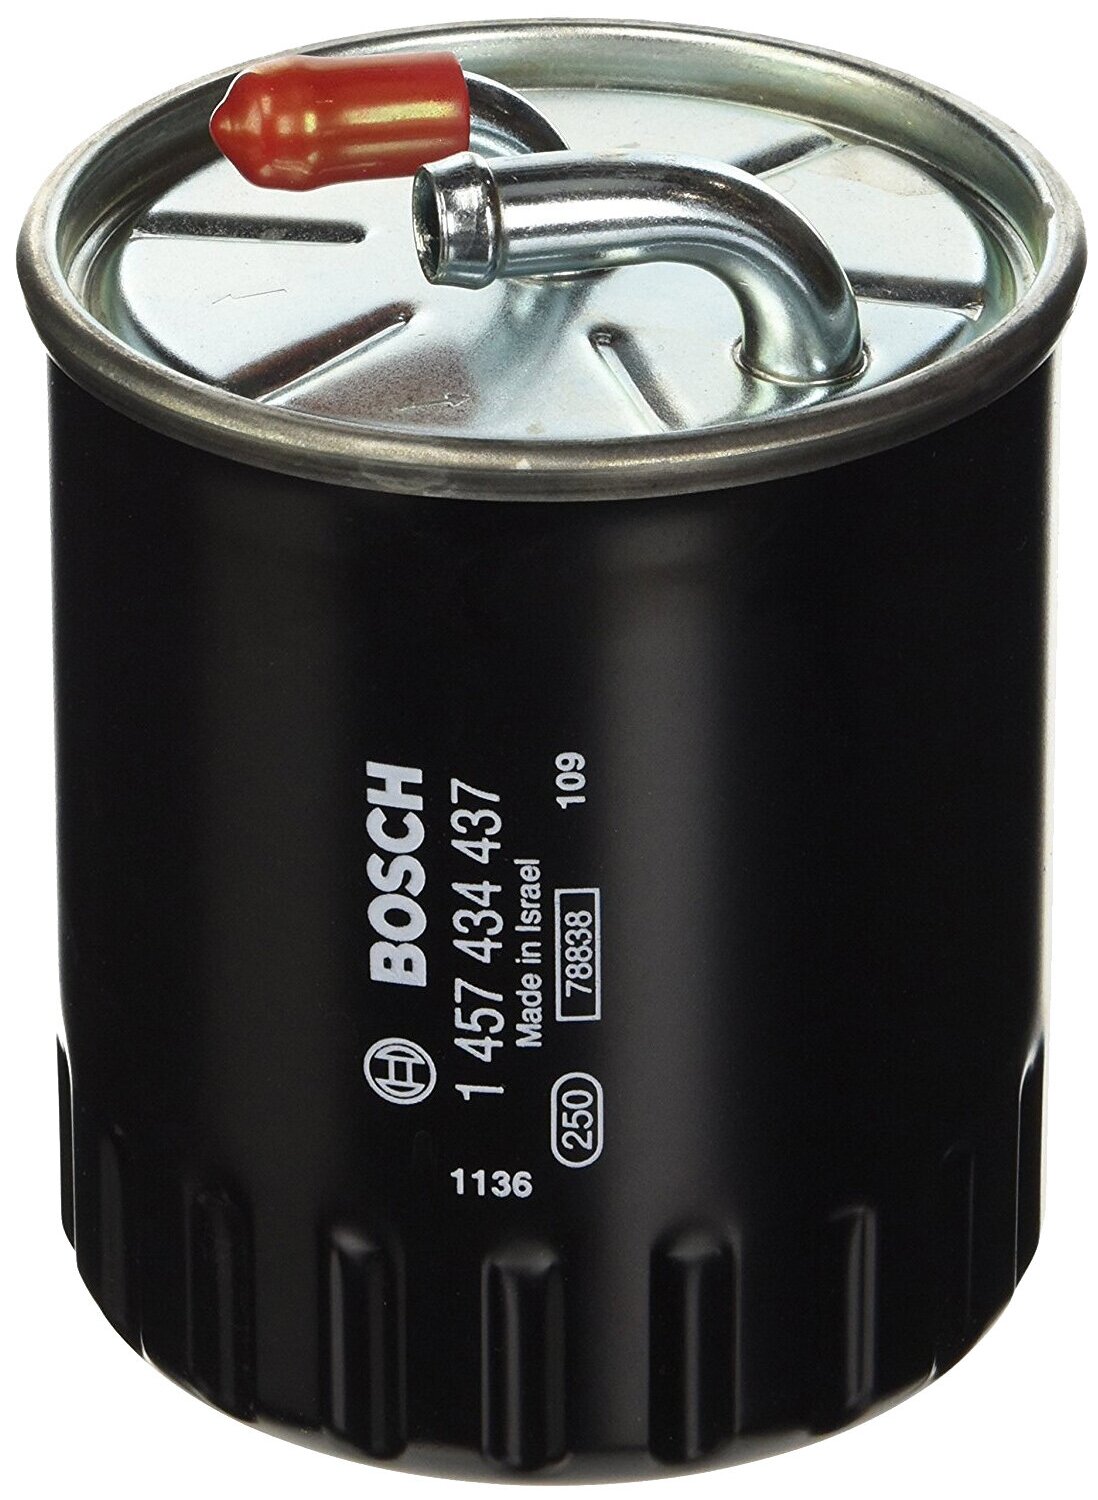 Топливный фильтр Bosch 1457434437